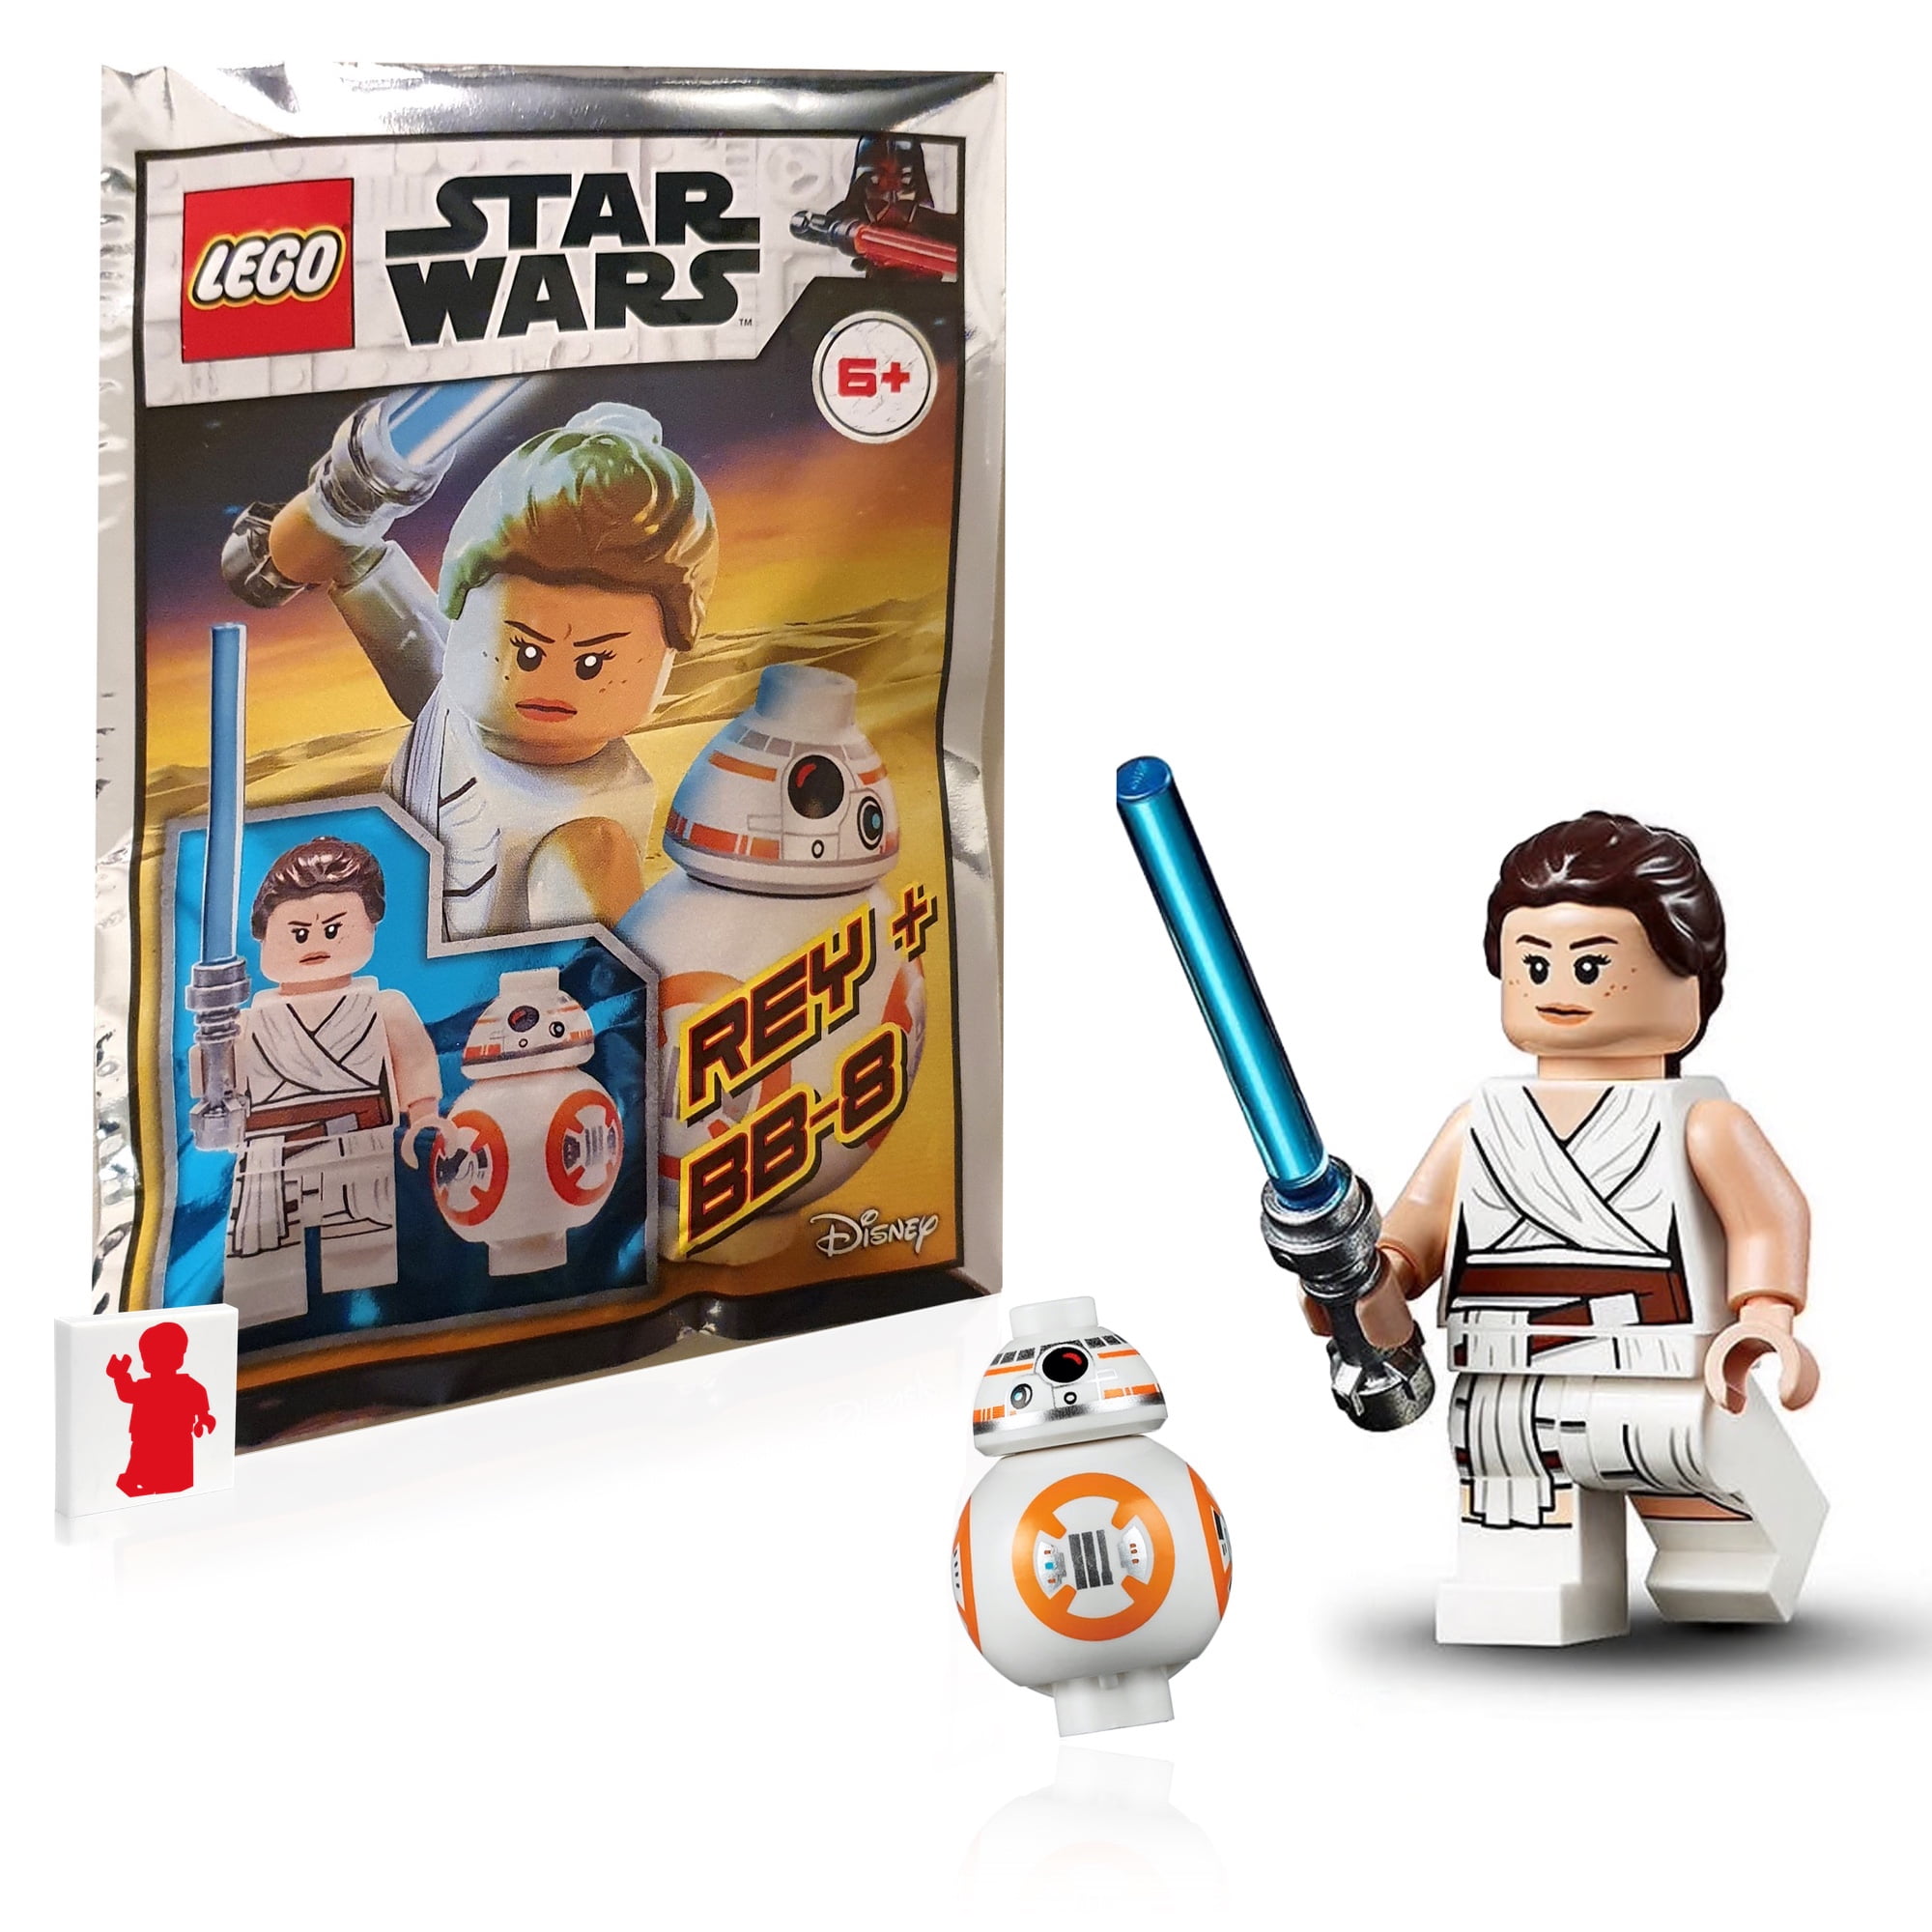 Star Wars Lego Minifigure ~ NEW BB-8 Droid 